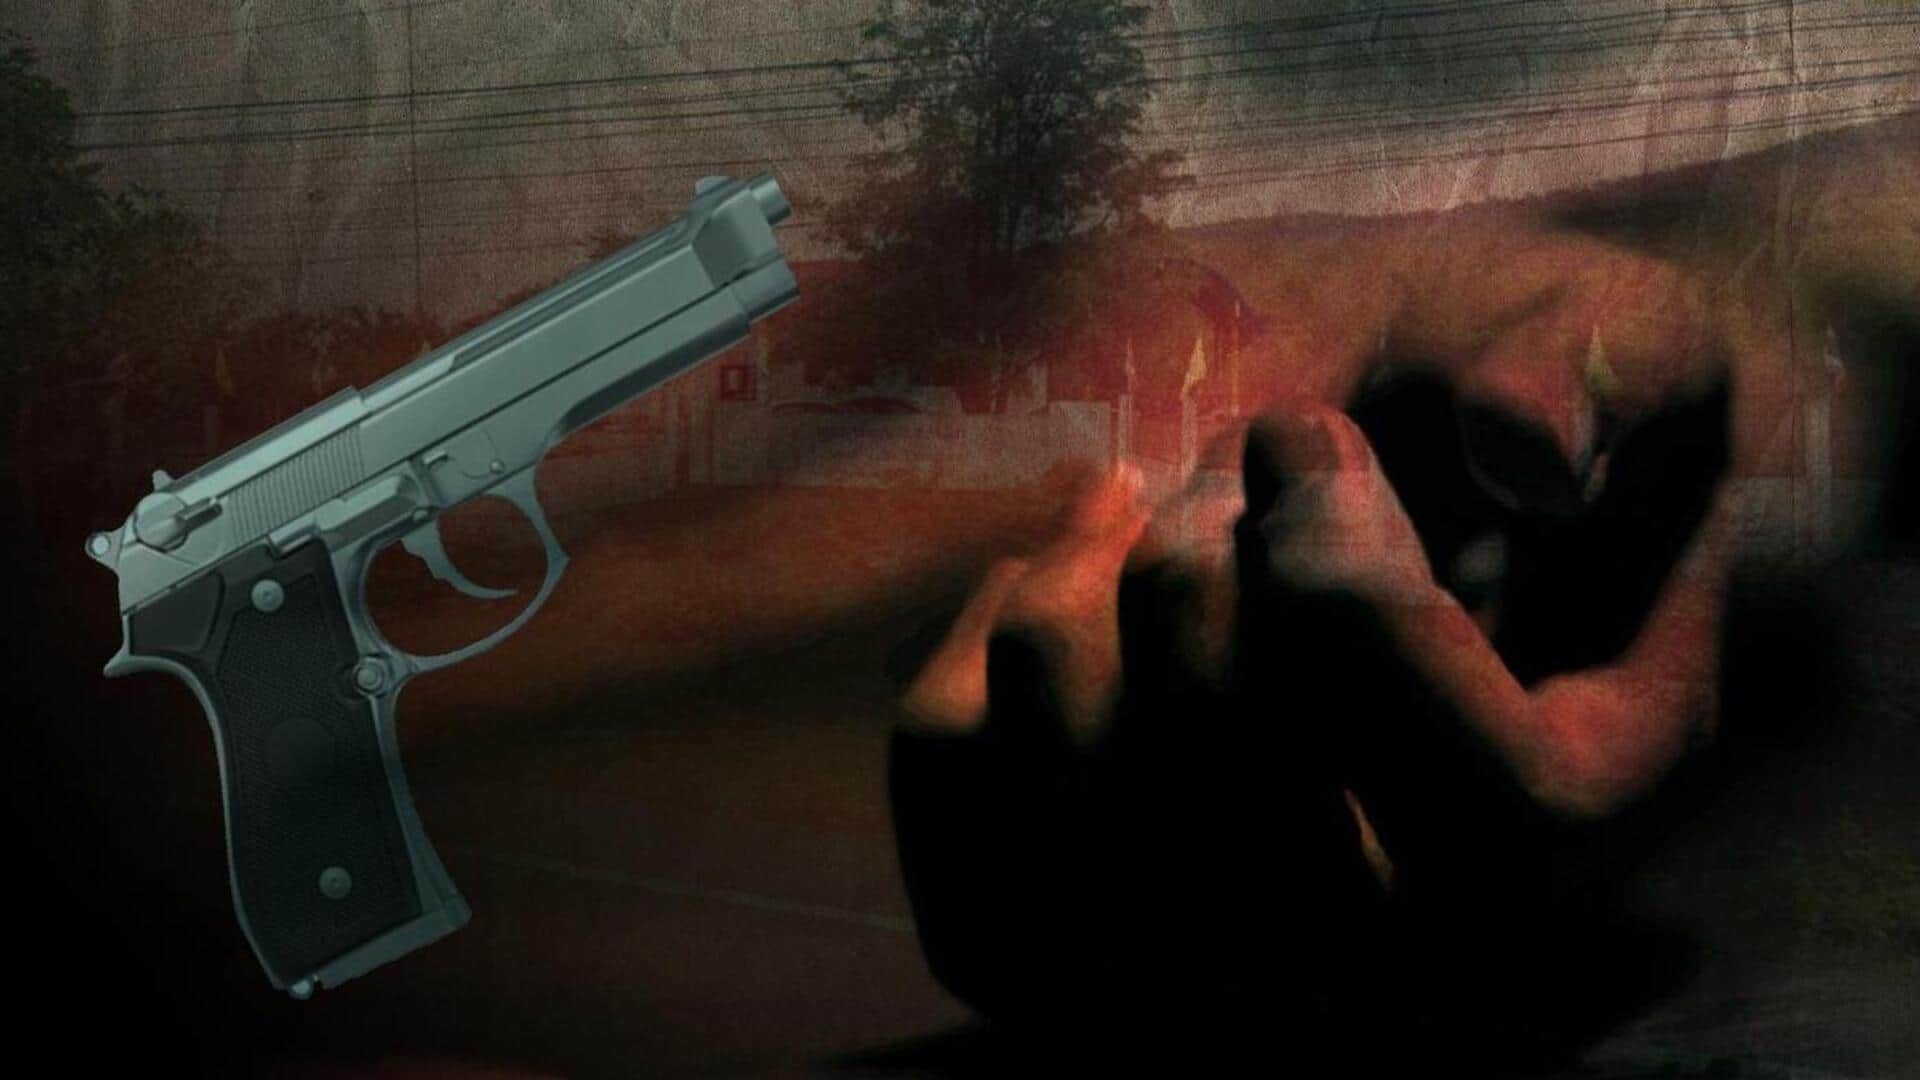 बिहार: पड़ोस की लड़की से प्रेम विवाह करने पर छपरा में युवक की गोली मारकर हत्या